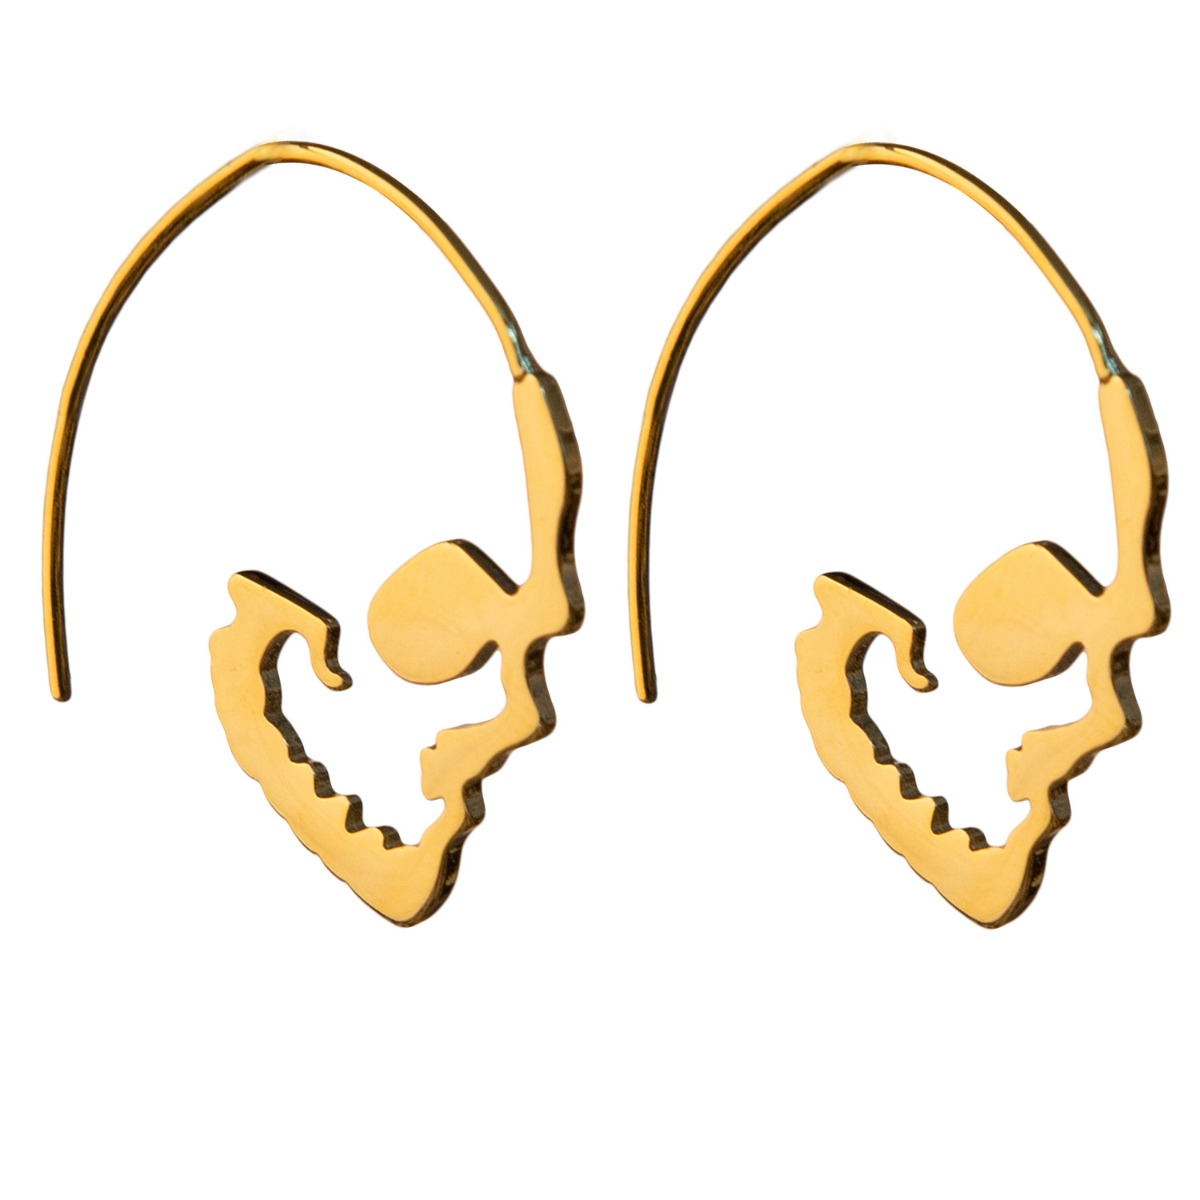 Skull Hoop - Big-Goldproduktzoombild #1